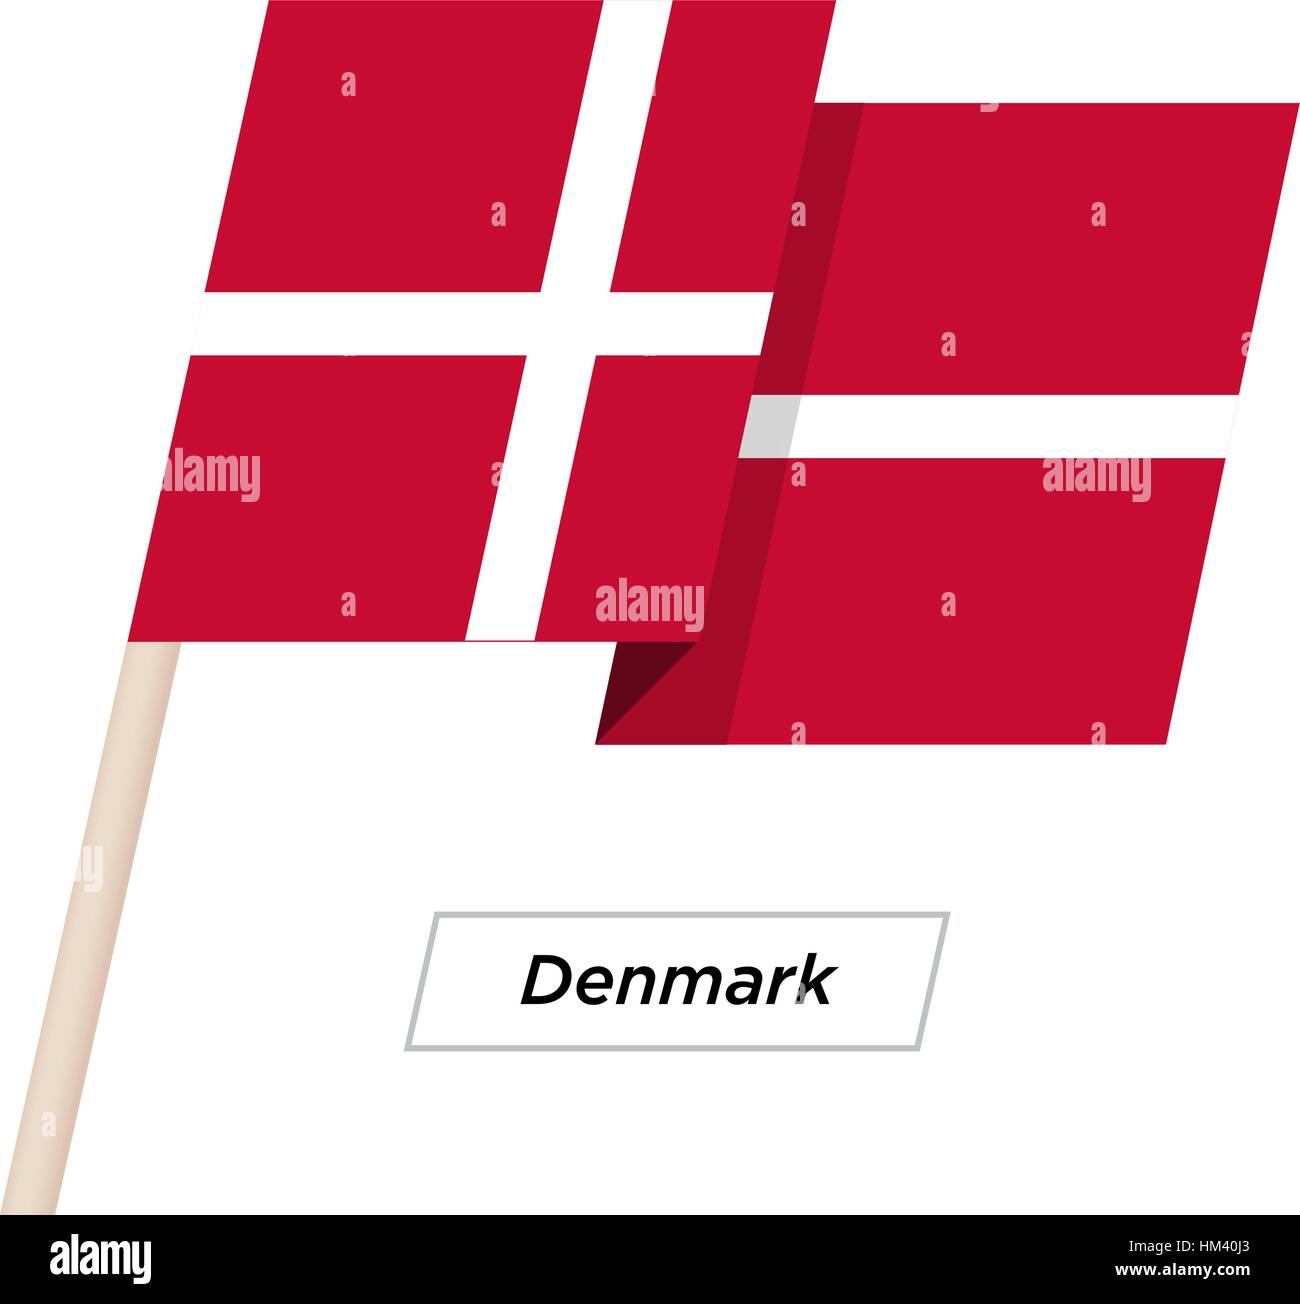 Denmark Ribbon Waving Flag Isolated on White. Vector Illustration. Stock Vector